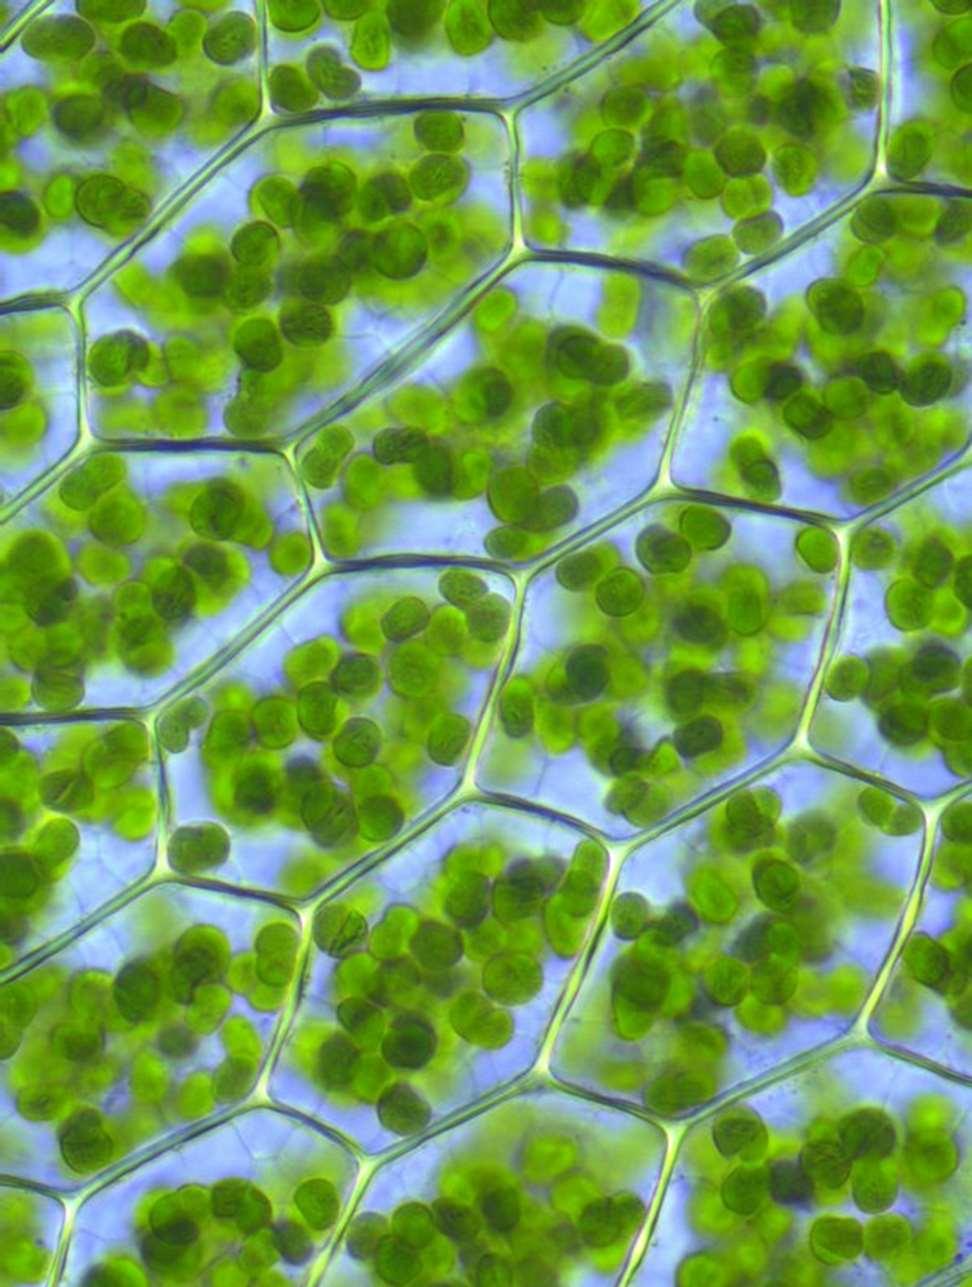 A növényi sejtek az állati sejtektől eltérő legfontosabb jellemzői: a sejtet kívülről cellulóz sejtfal határolja, ezért a sejtek alakja hatszöges és